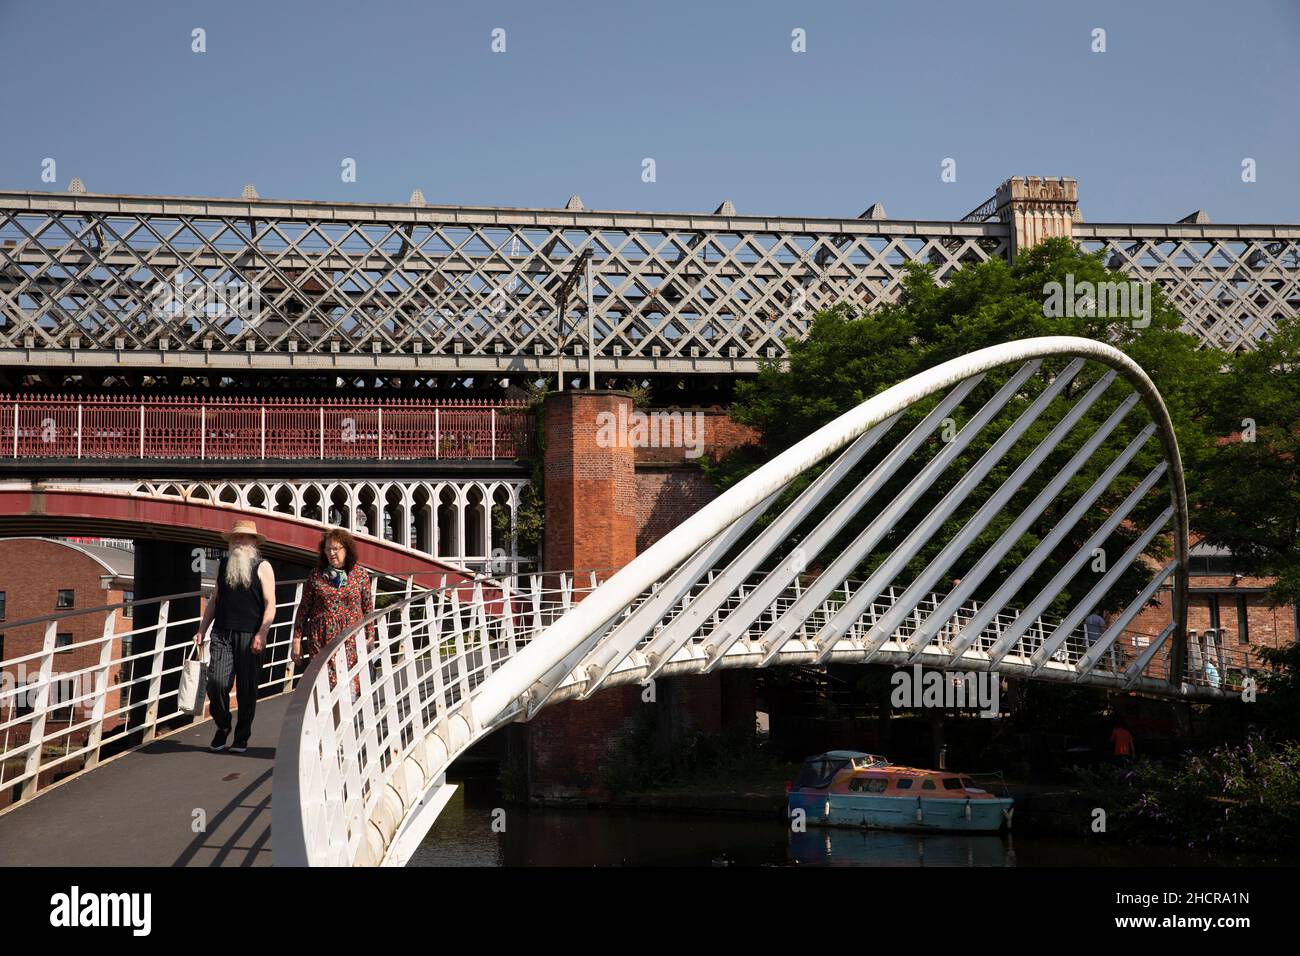 Royaume-Uni, Angleterre, Manchester, Castlefield, Merchant’s Bridge traversant le bassin du canal de Bridgewater au Viaduc ferroviaire Banque D'Images